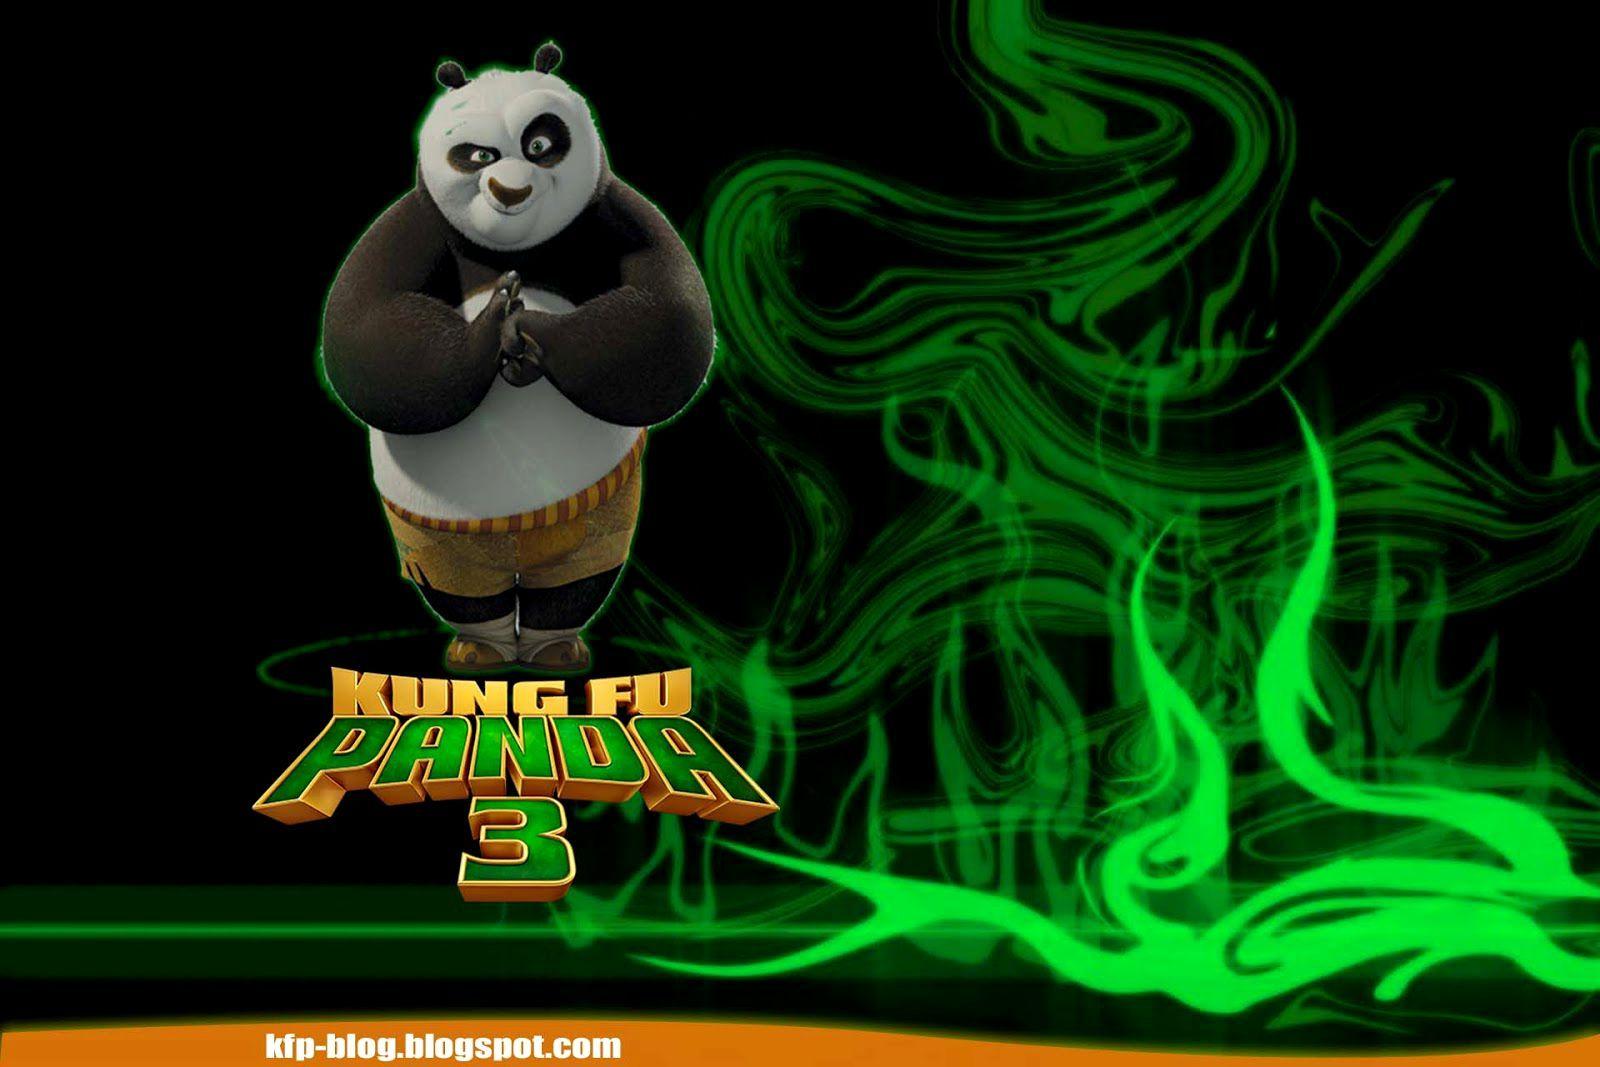 Kung Fu Panda 3 Wallpaper. wallgem. Free Download 4k